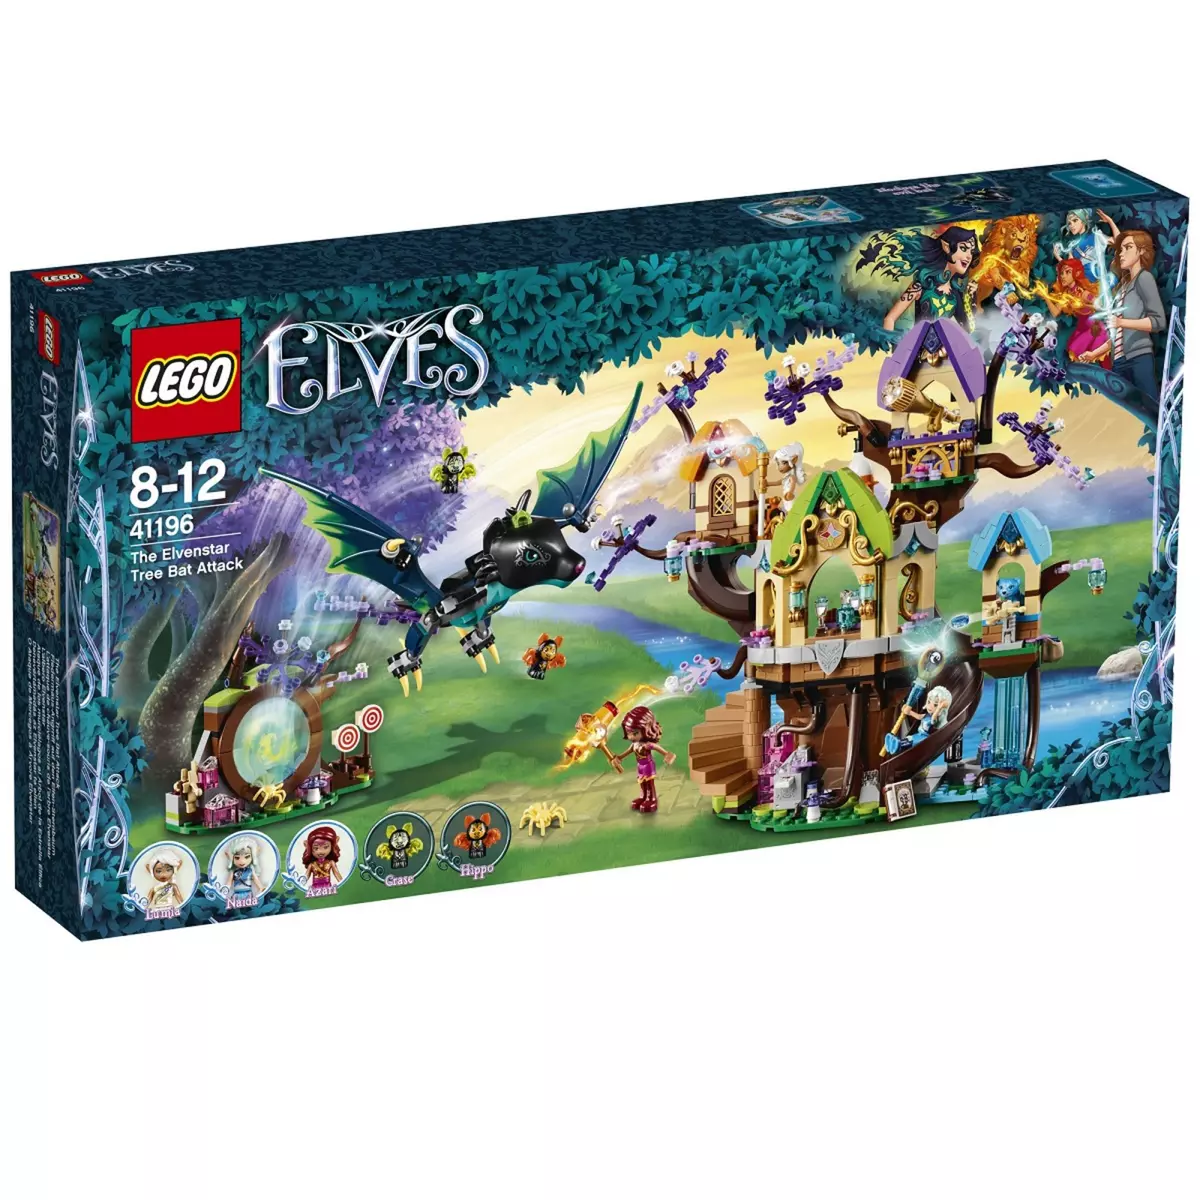 LEGO 41196 Elves L'attaque de chauve-souris de l'arbre Elvenstar